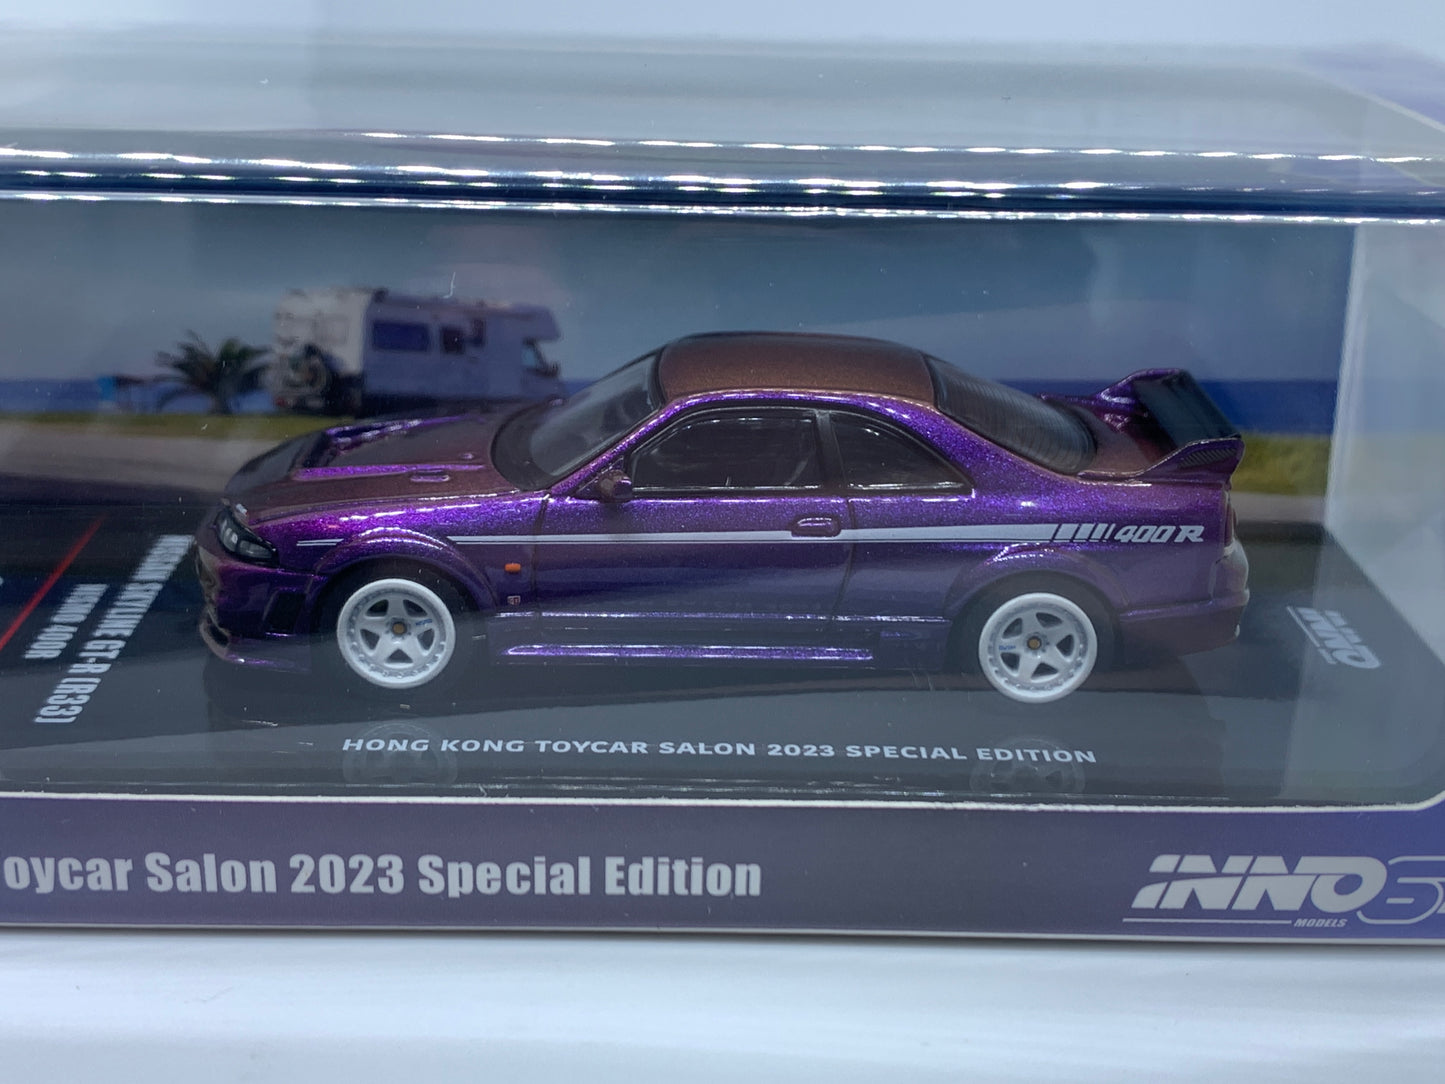 Inno64 - Nissan Skyline R33 GT-R Nismo 400R Hong Kong Toycar Salon Midnight Purple II